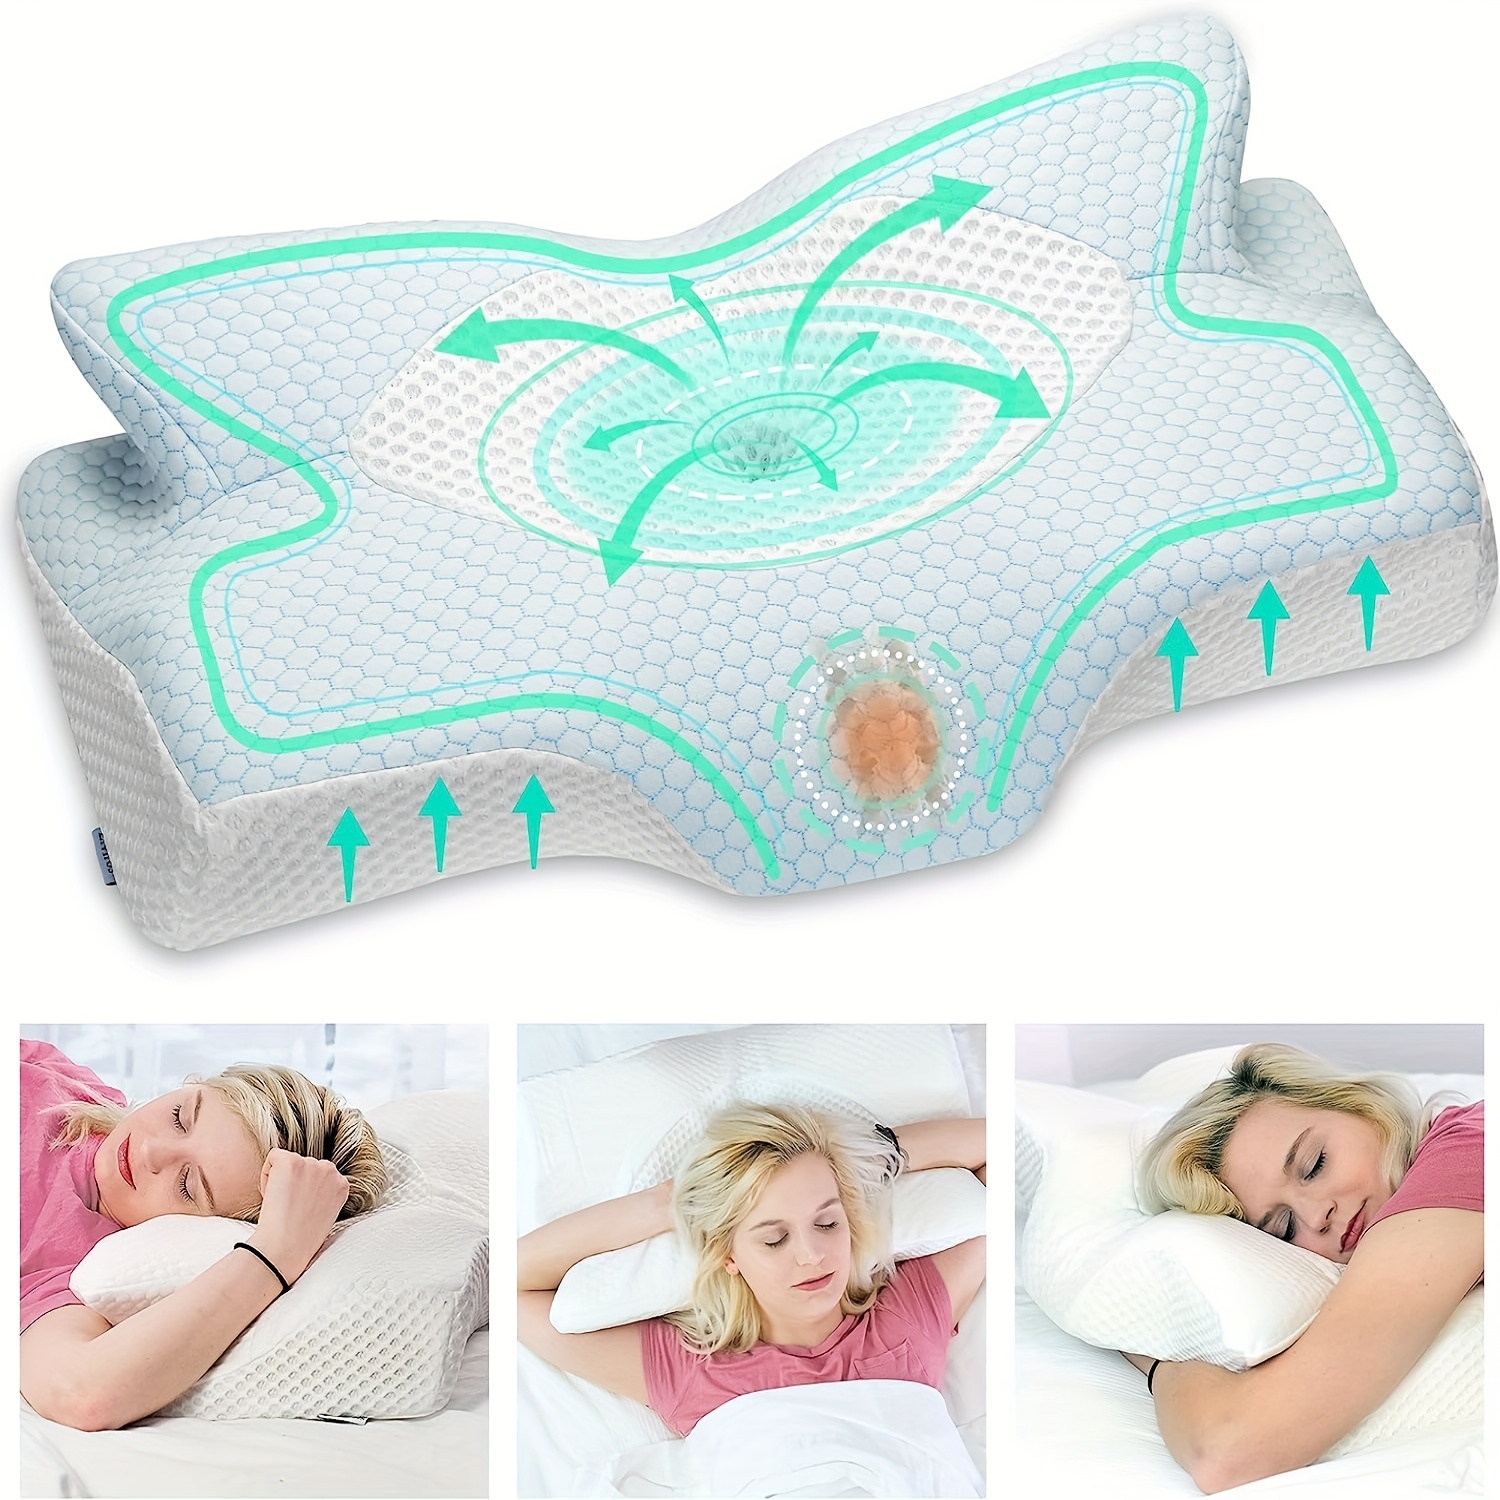 Slim Sleeper almohada de espuma viscoelástica: la mejor almohada plana,  delgada, perfil bajo, funda de algodón, almohada baja, solo 3 pulgadas,  ideal